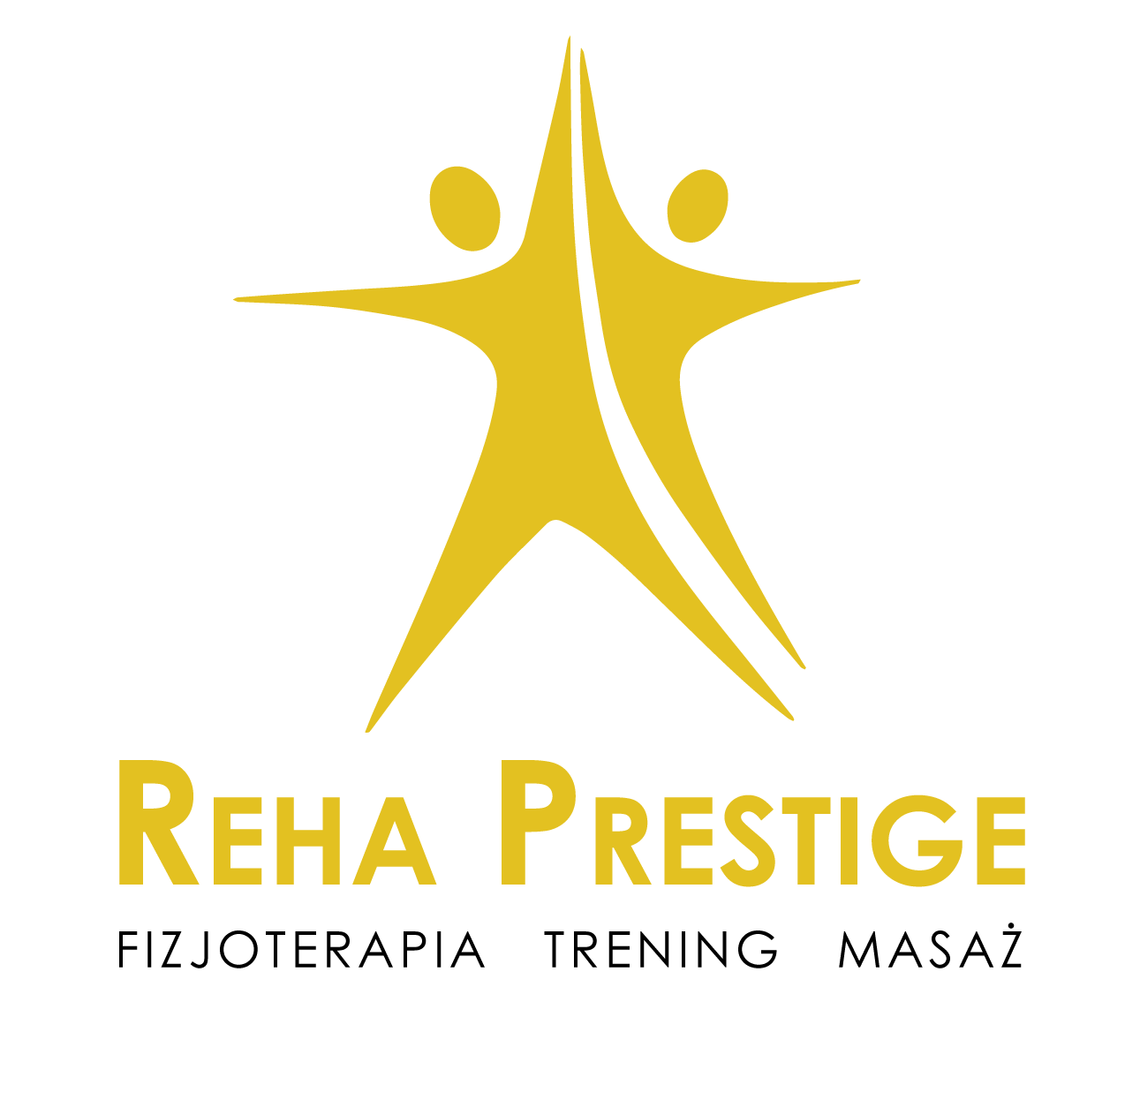 Reha Prestige - Fizjoterapia Trening Masaż - Centrum rehabilitacji Gdynia